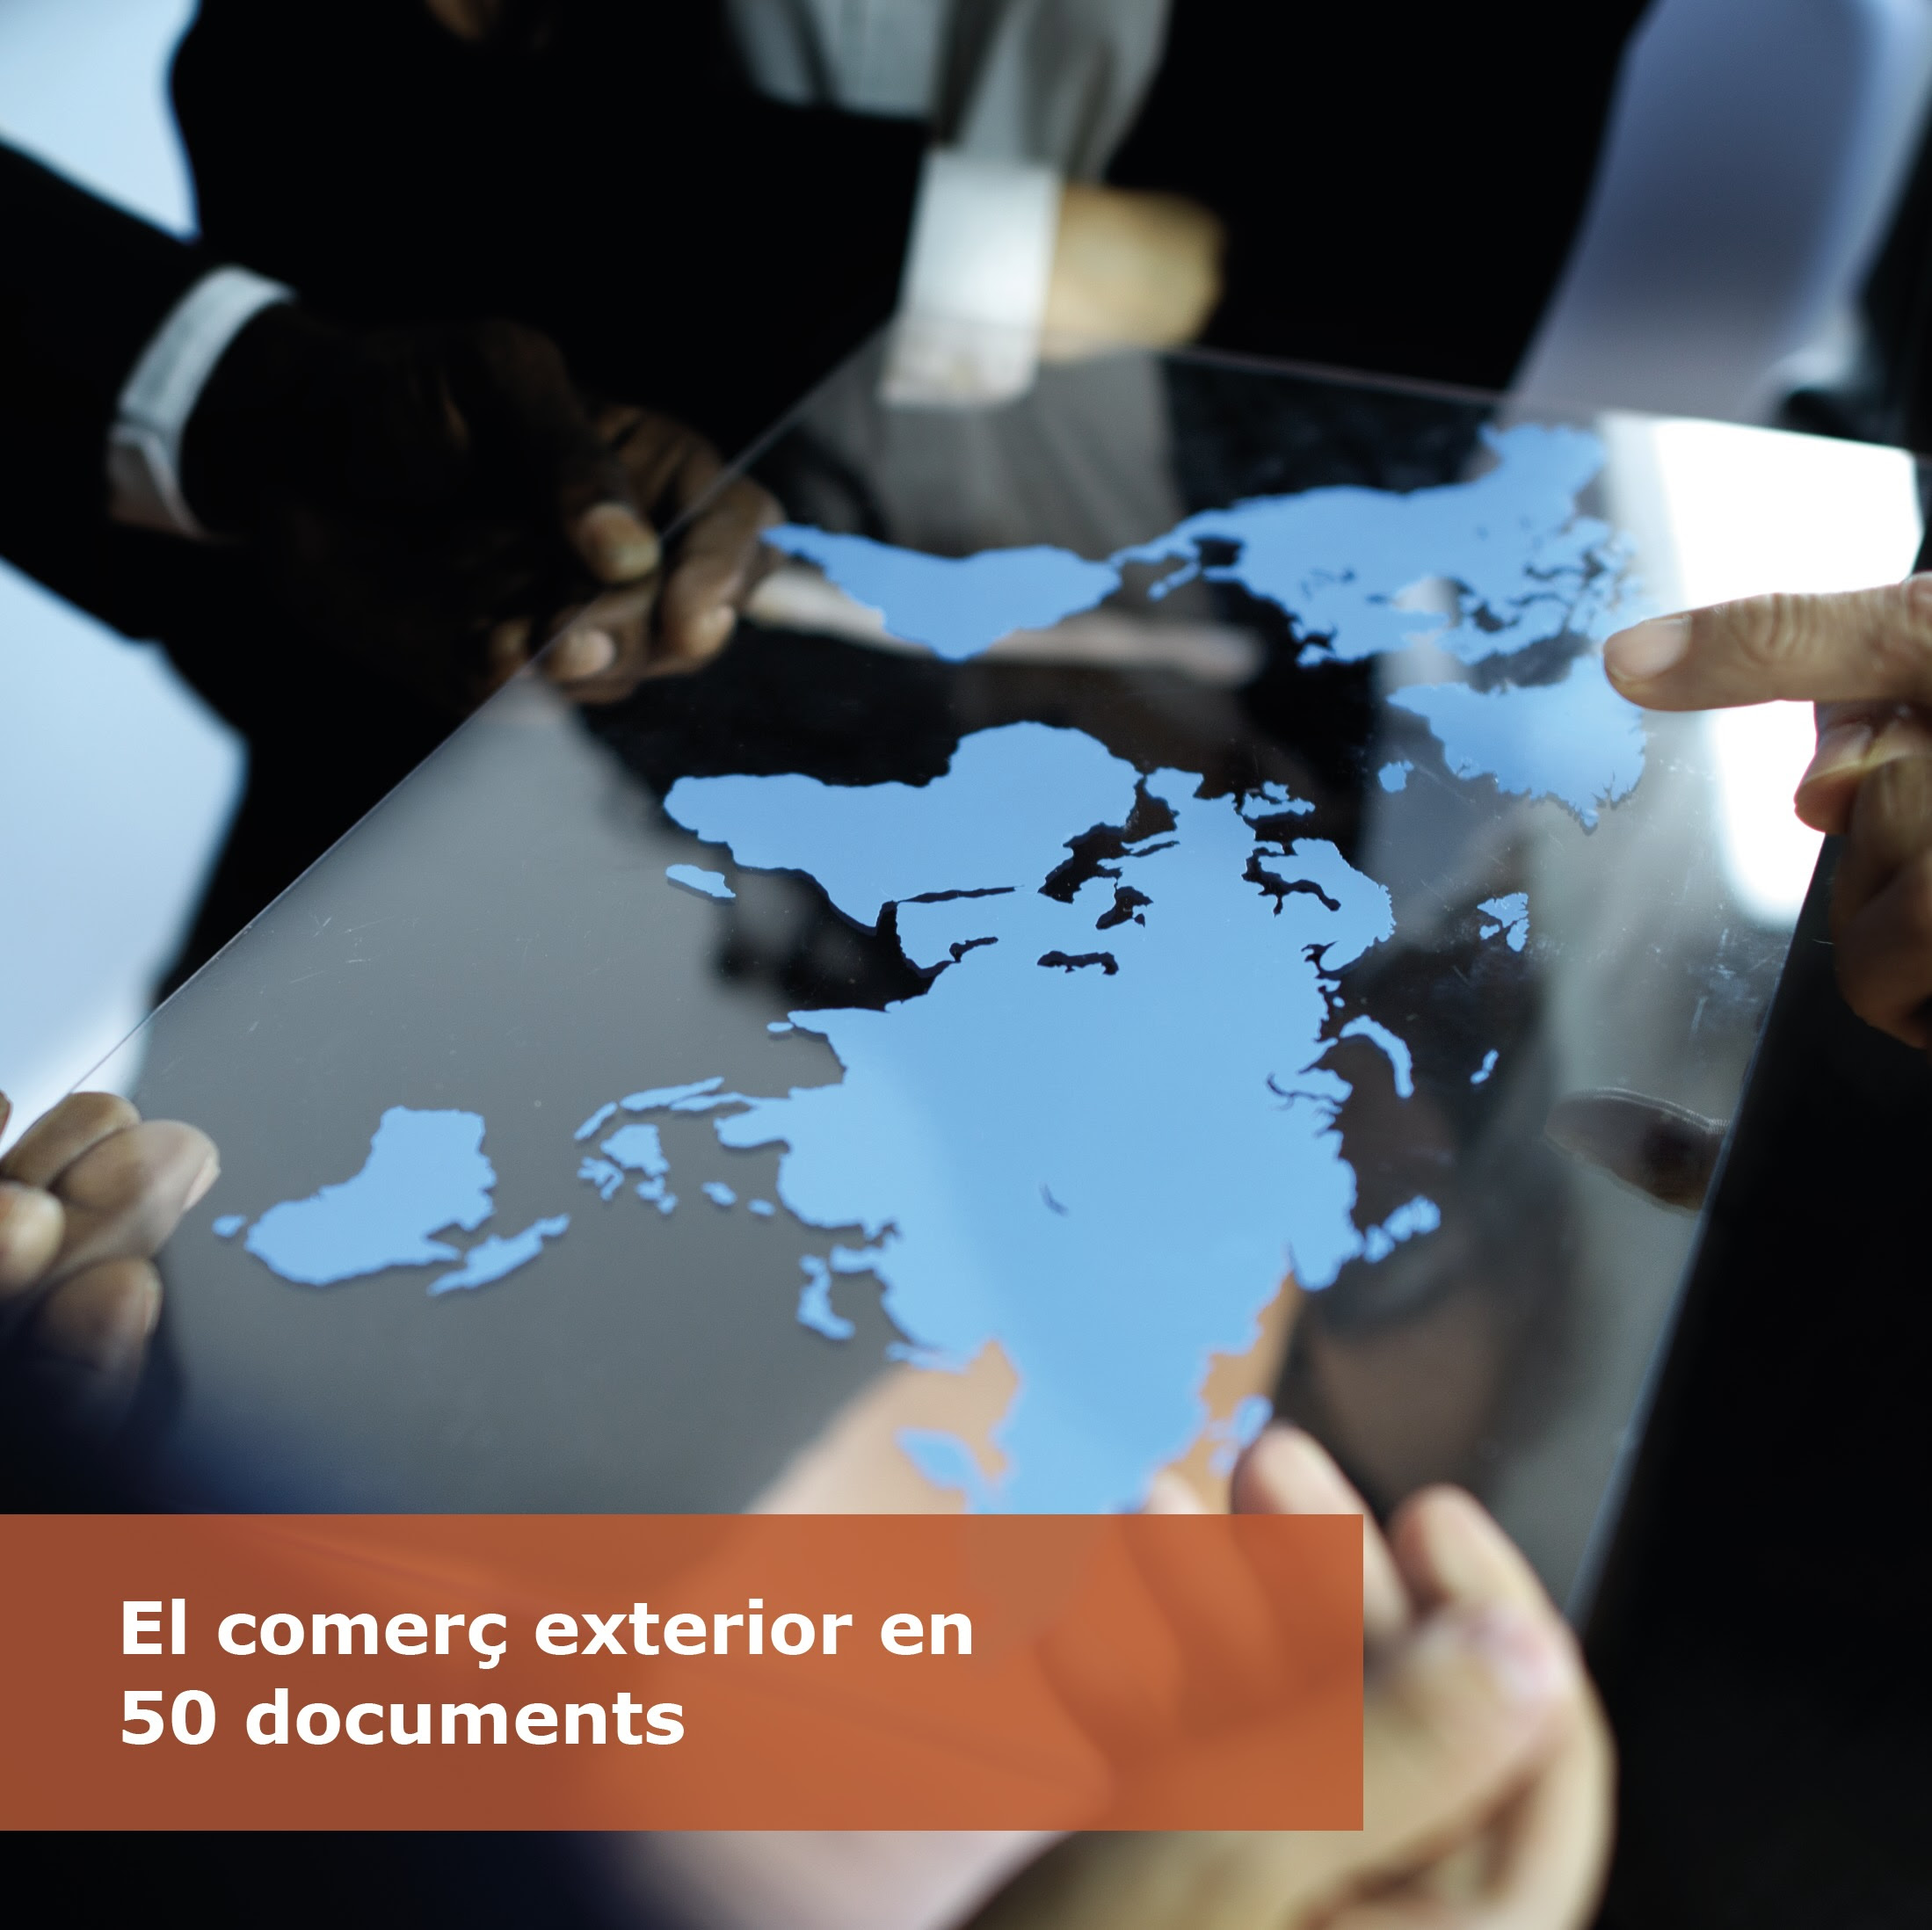 El comerç exterior en 50 documents